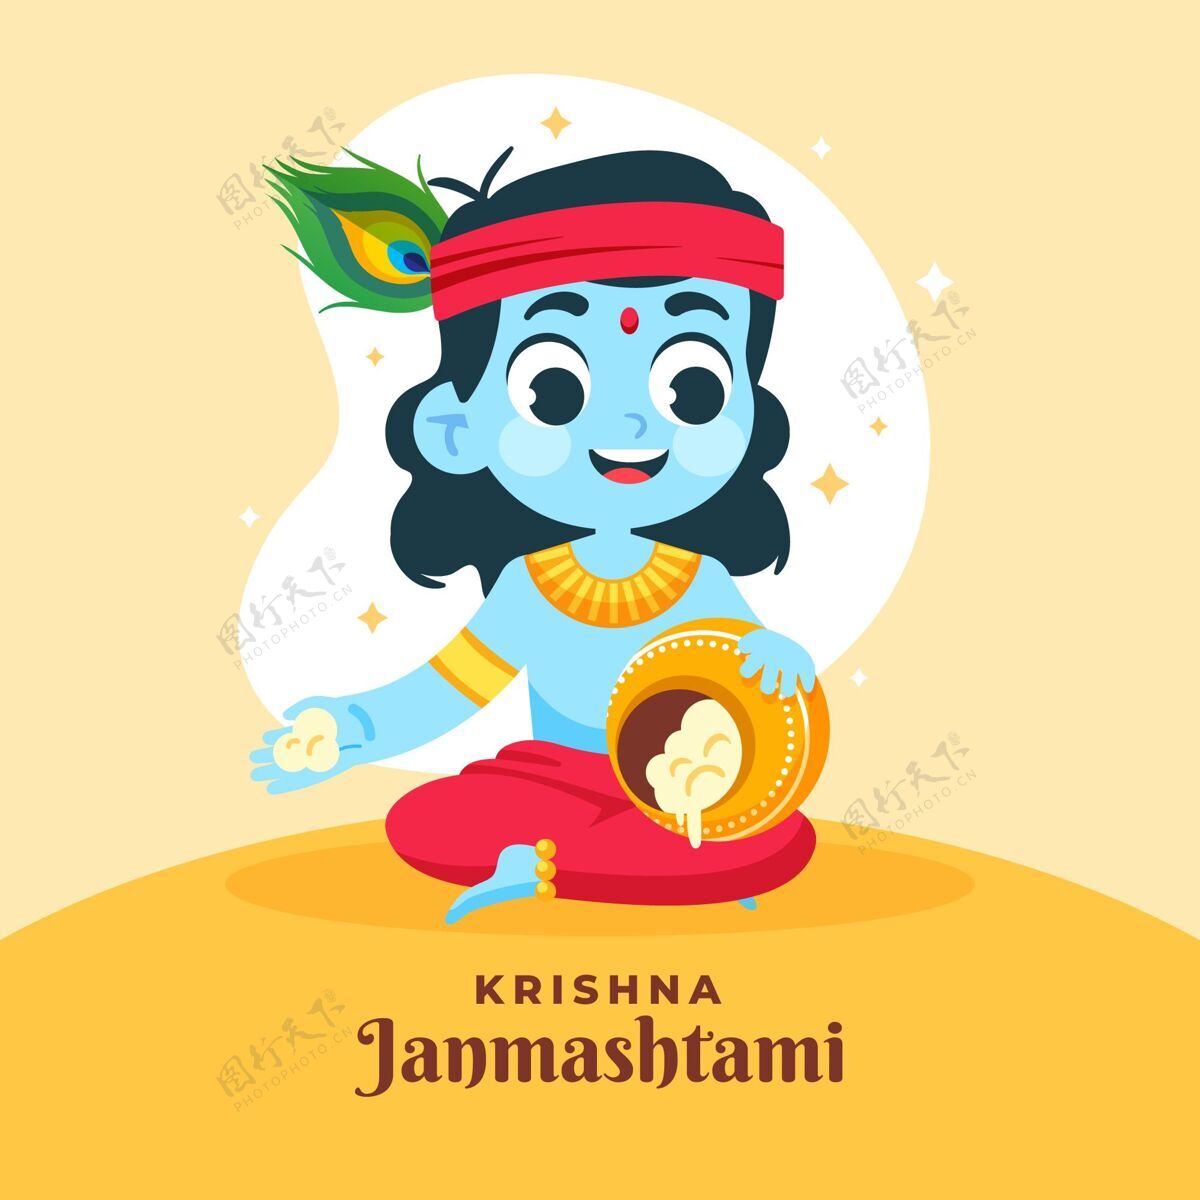 8月31日婴儿克里希纳吃黄油的插图奎师那简玛斯塔米印度教活动